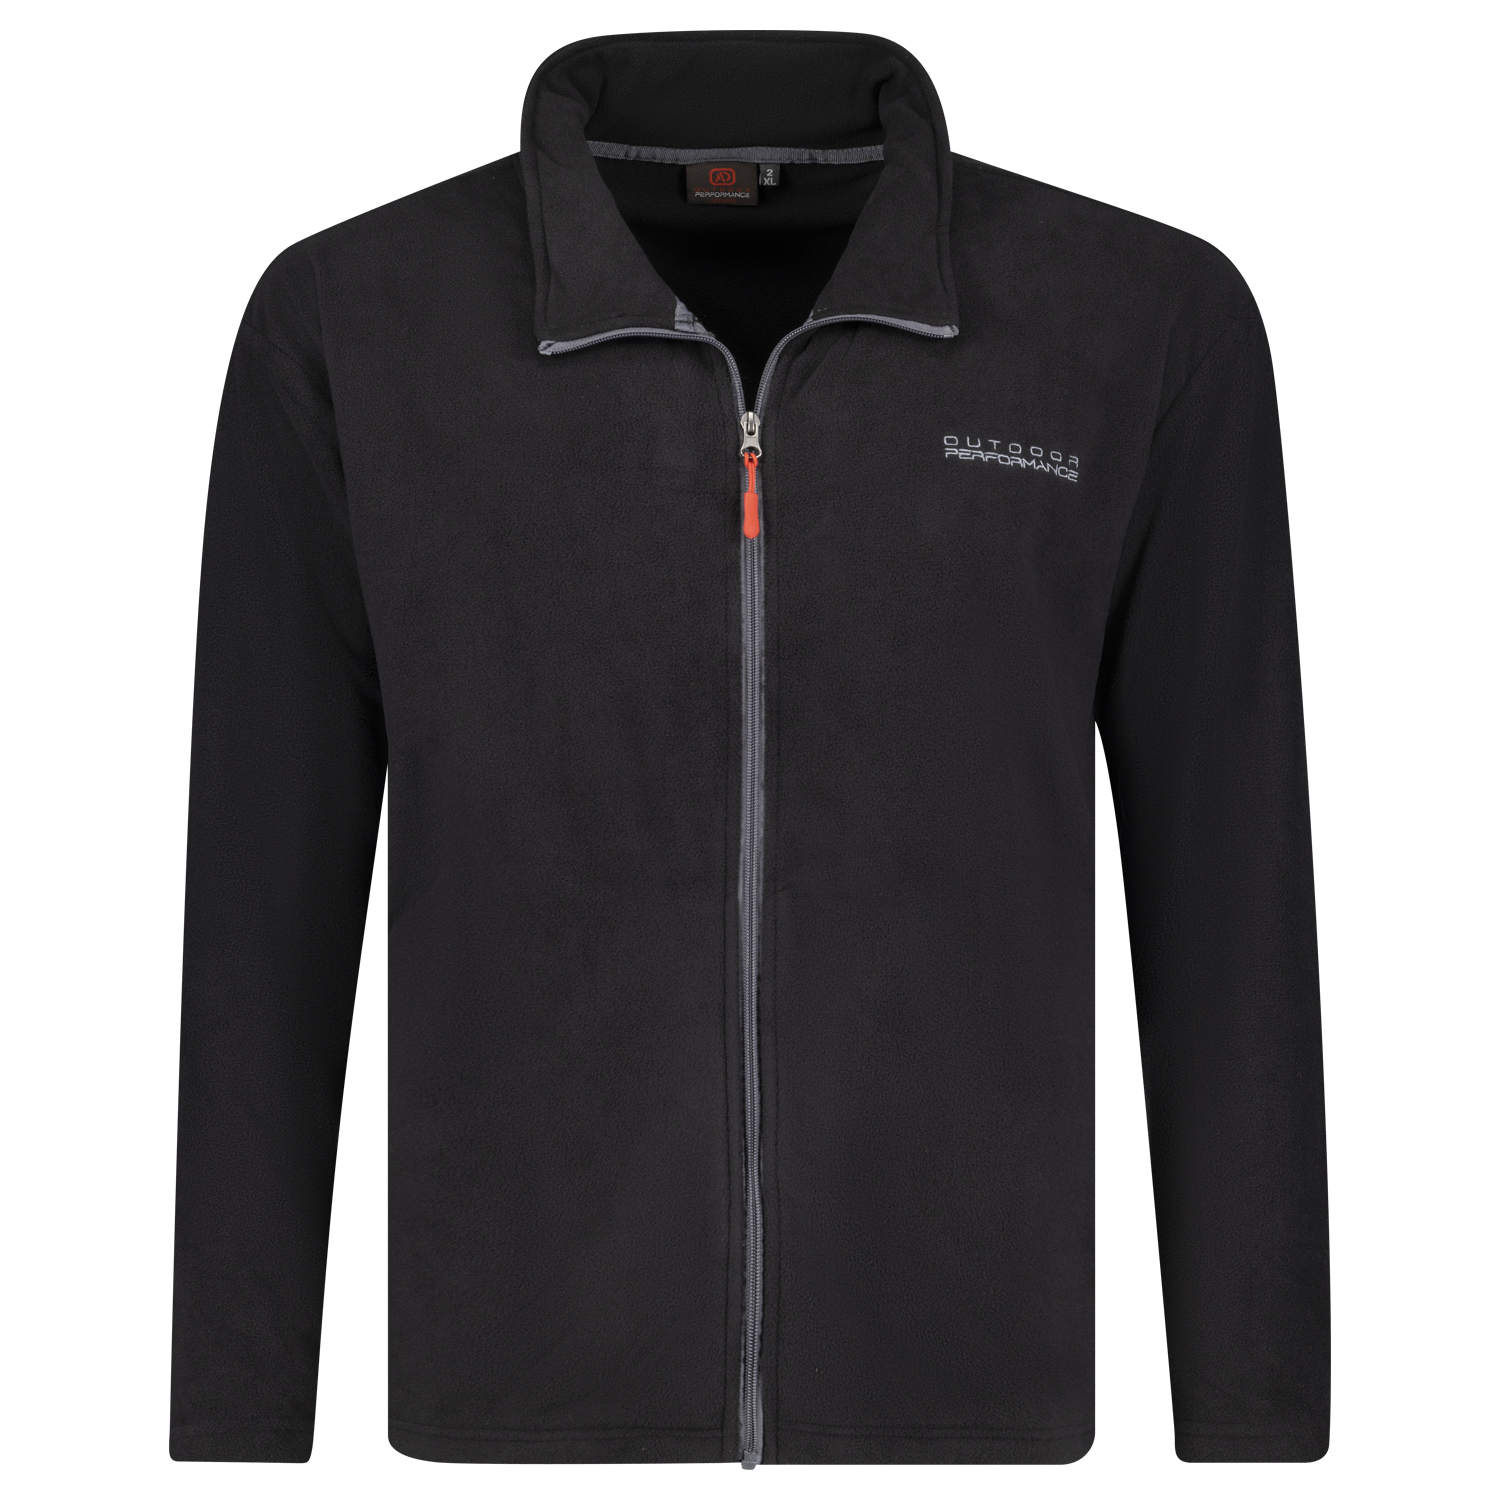 Fleece jacket in black Series Toronto by Adamo up to oversize 12XL